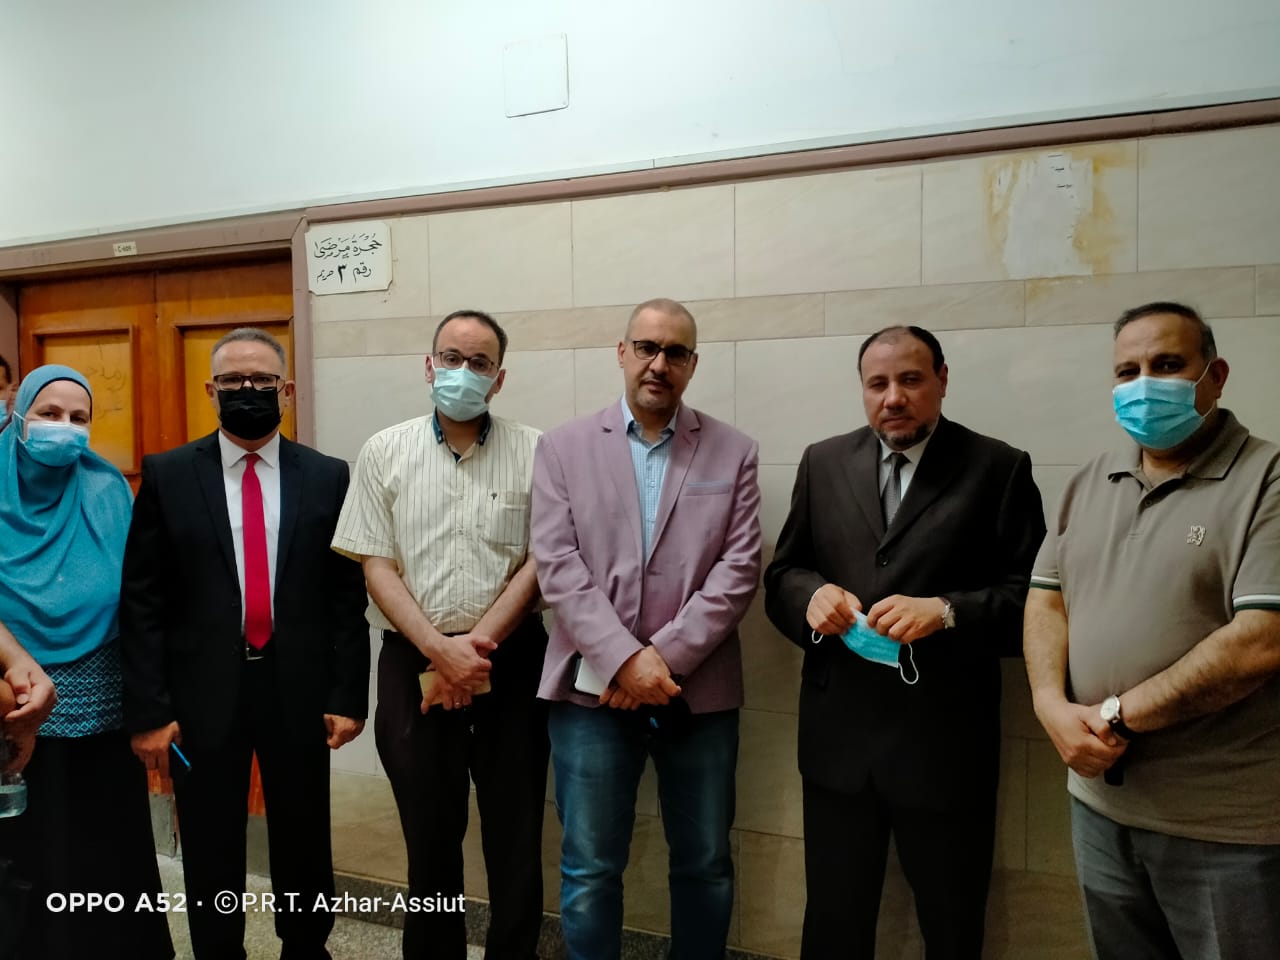 نائب رئيس جامعة الأزهر يزور الطالبتين المصابتين للاطمئنان على حالتهما الصحية